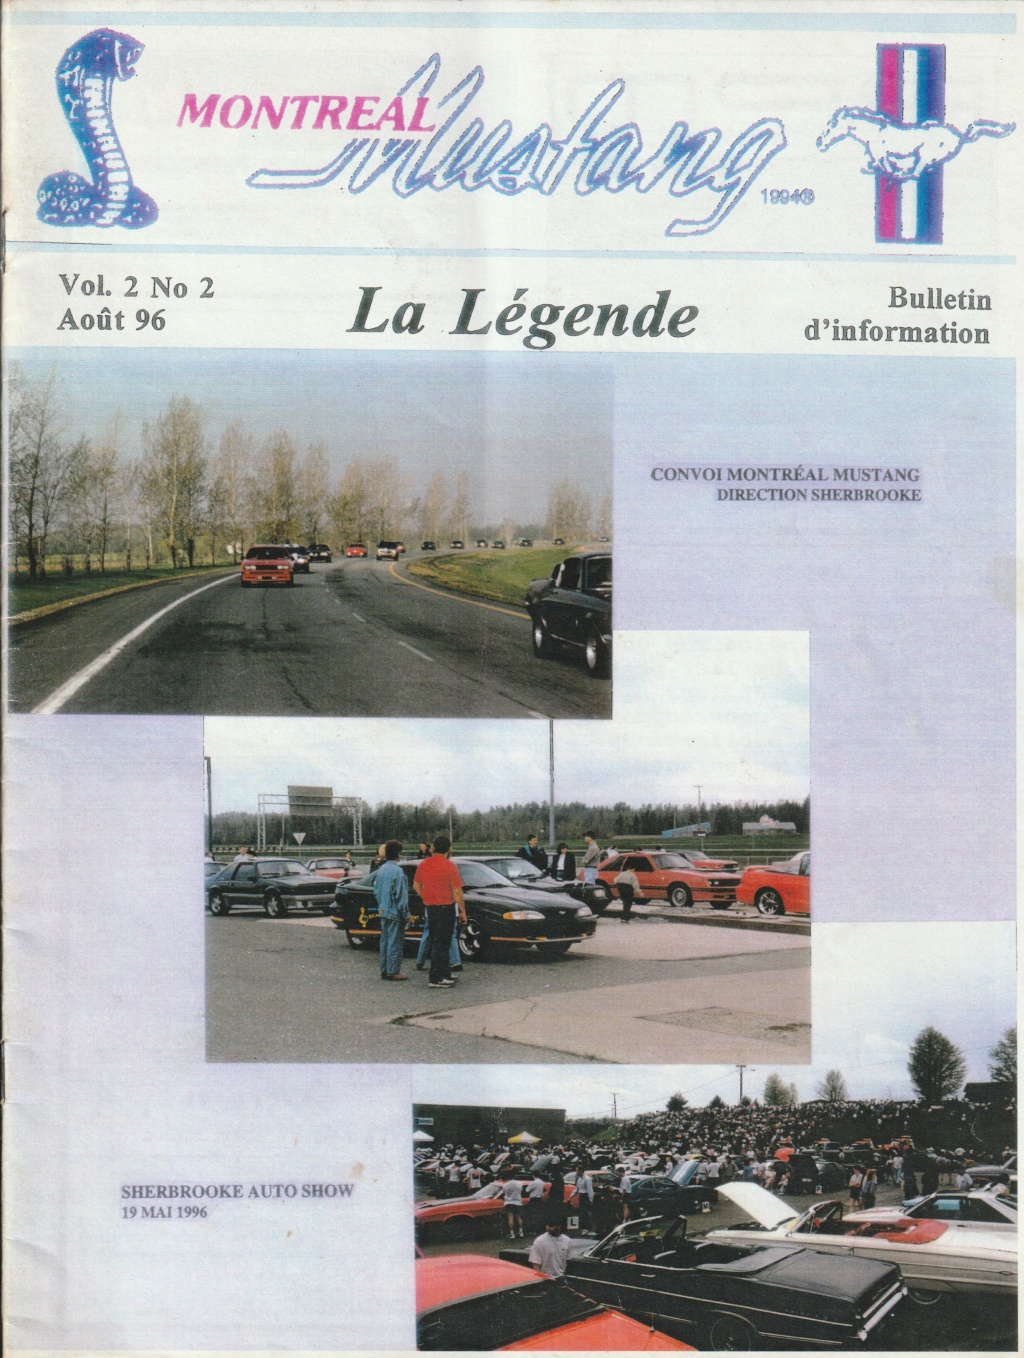 Montréal Mustang dans le temps! 1981 à aujourd'hui (Histoire en photos) - Page 8 Img_2390